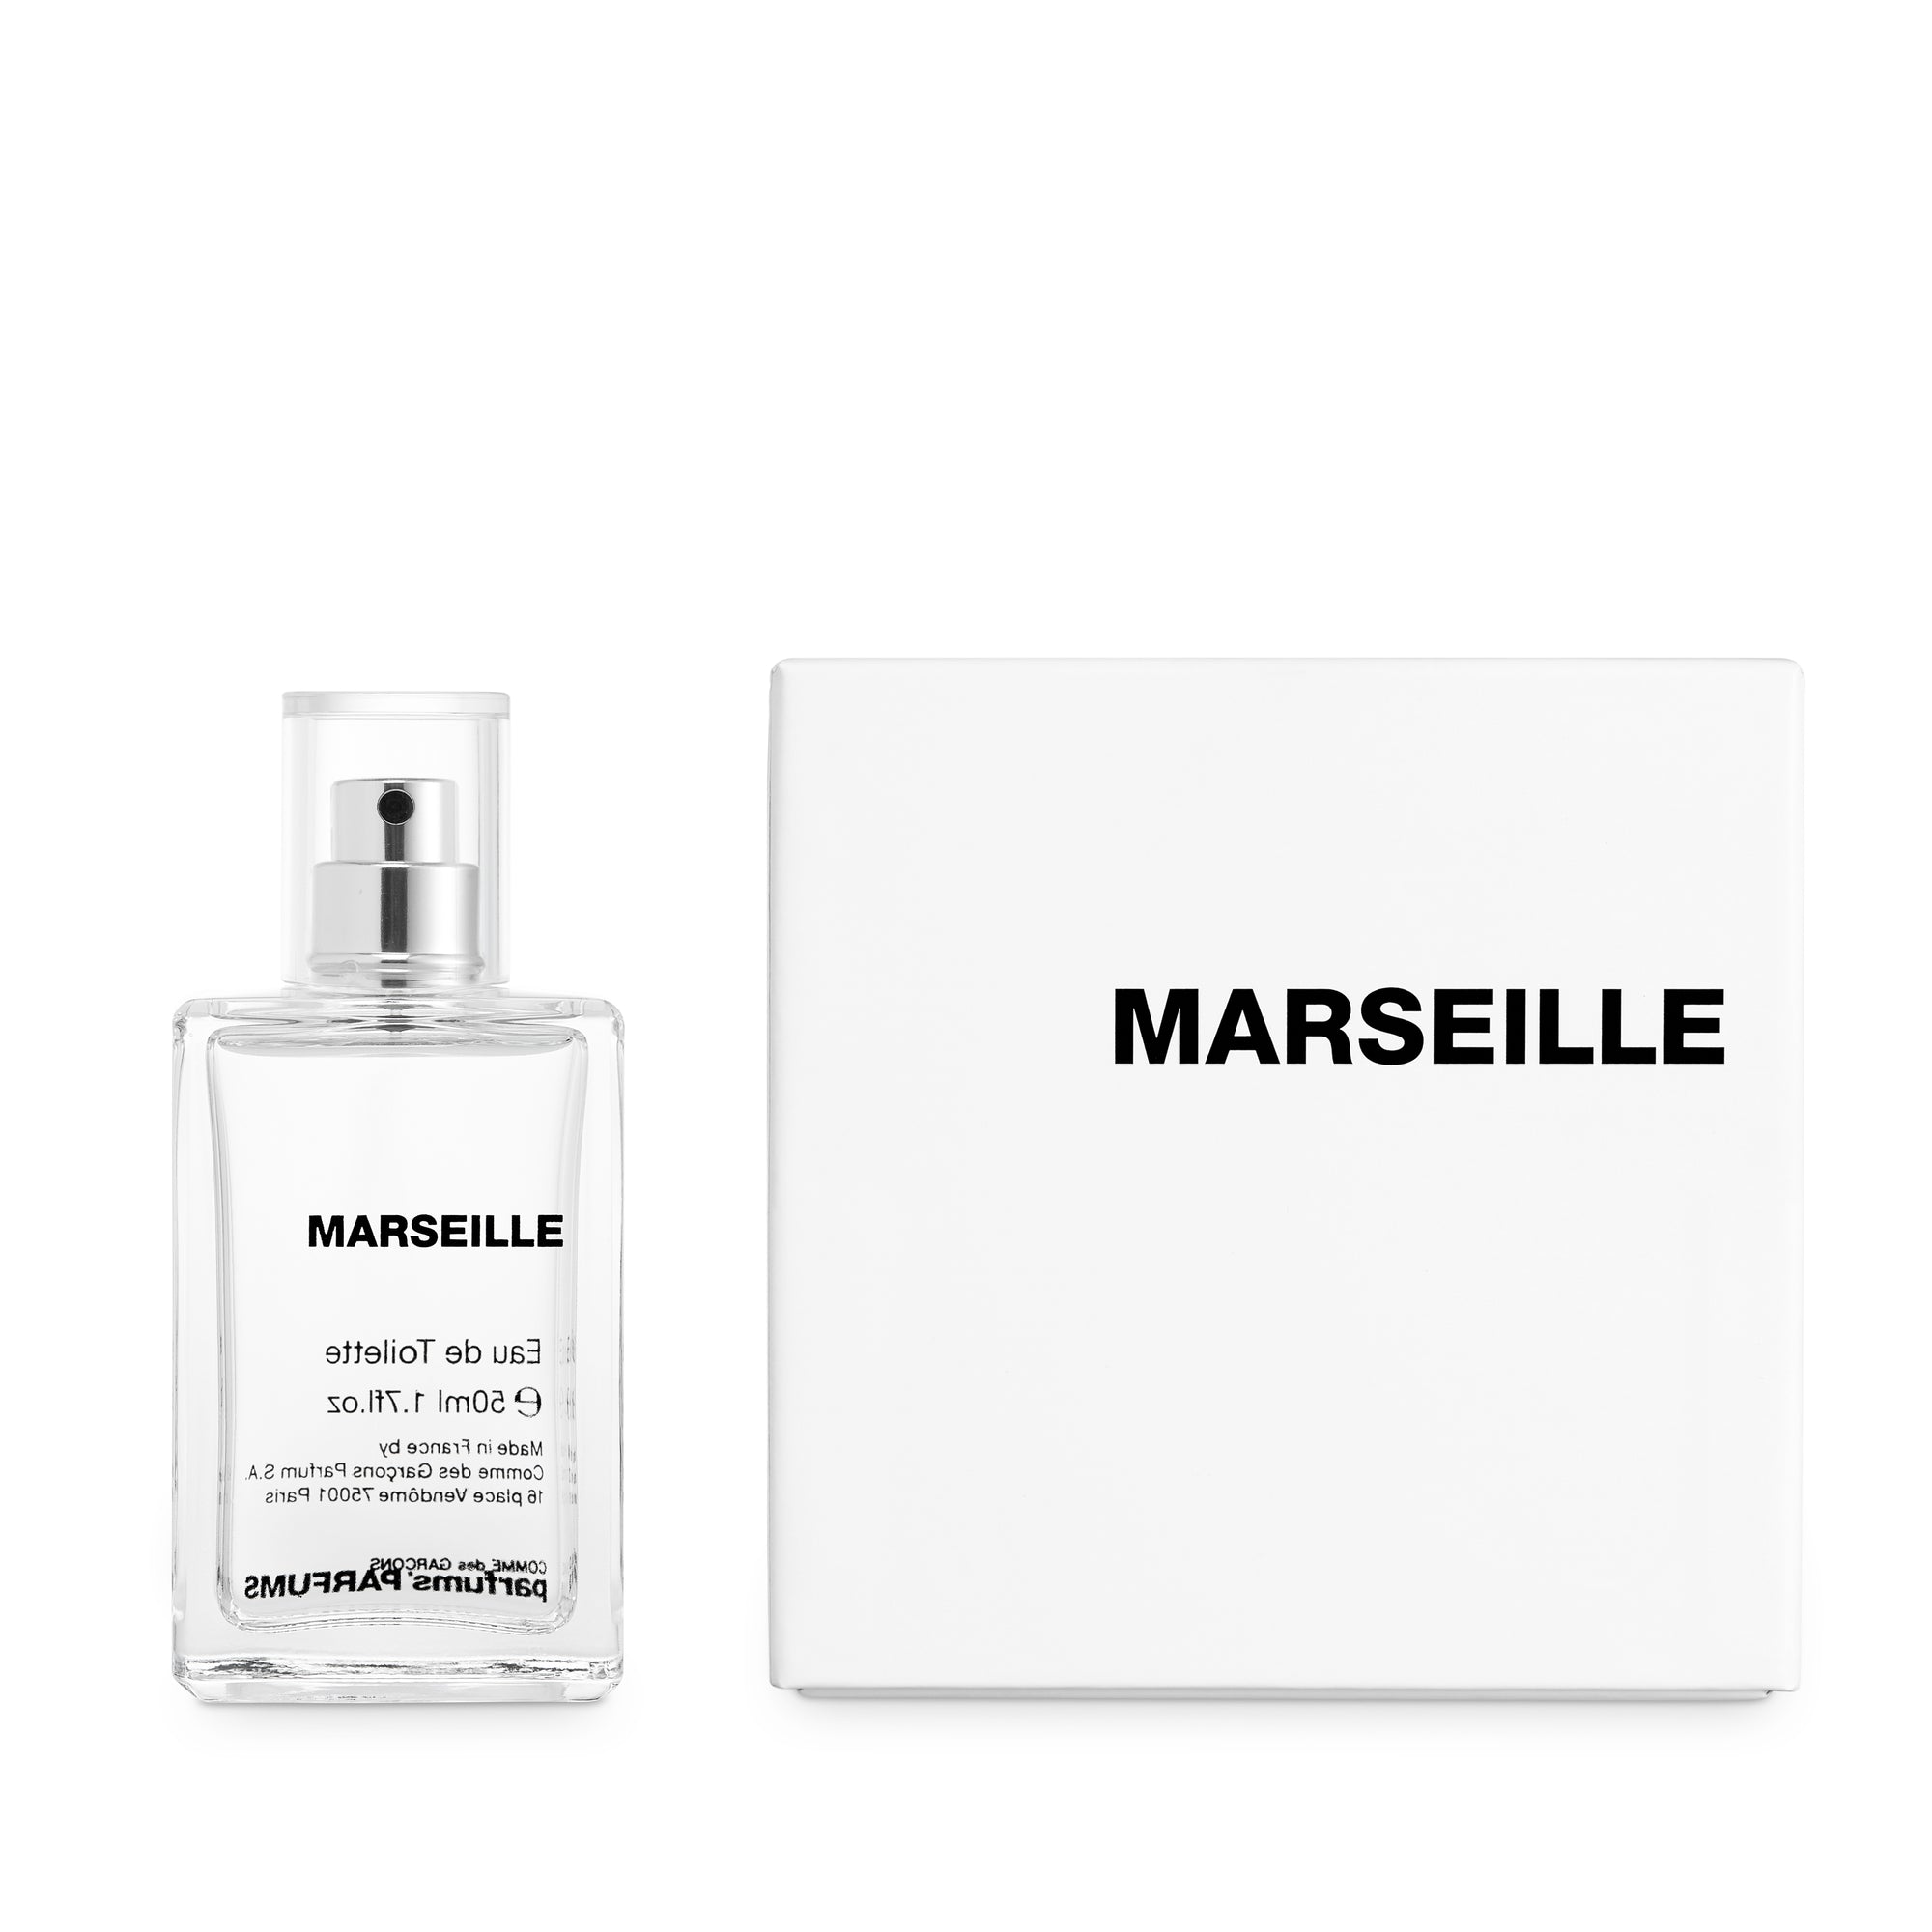 CDG Parfum - Marseille Eau de Toilette view 2